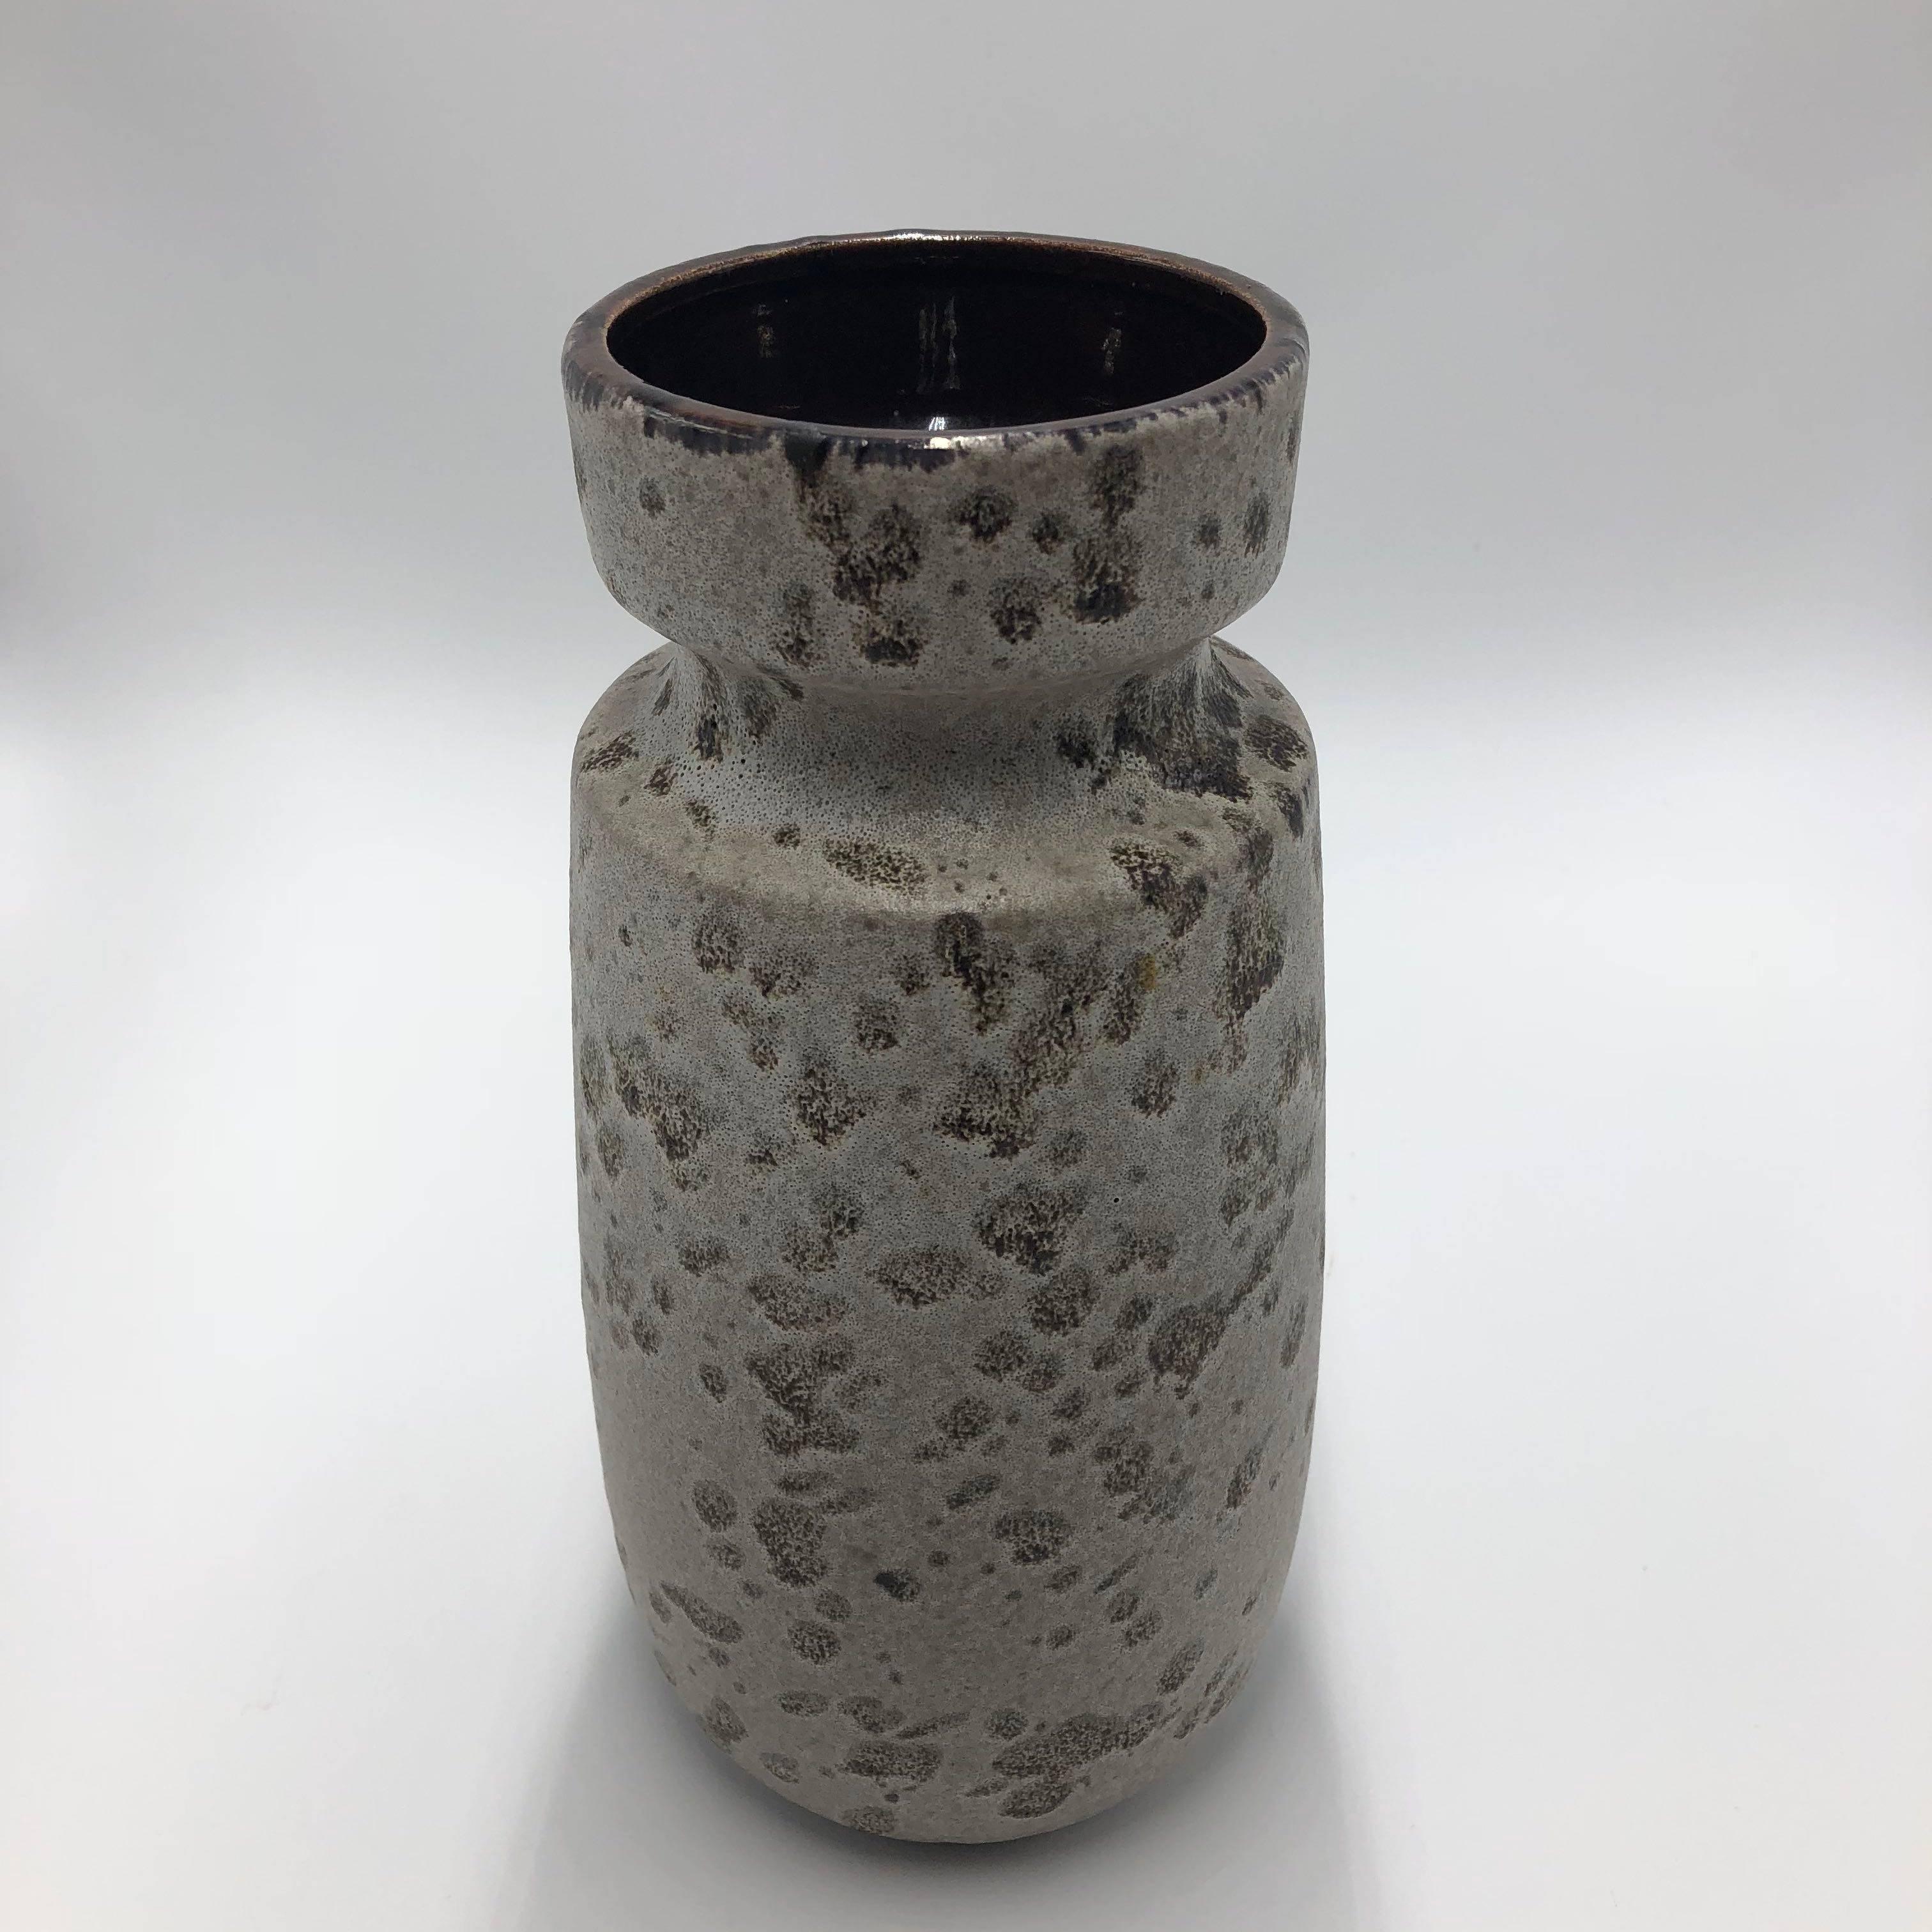 1960s ceramic vase with 